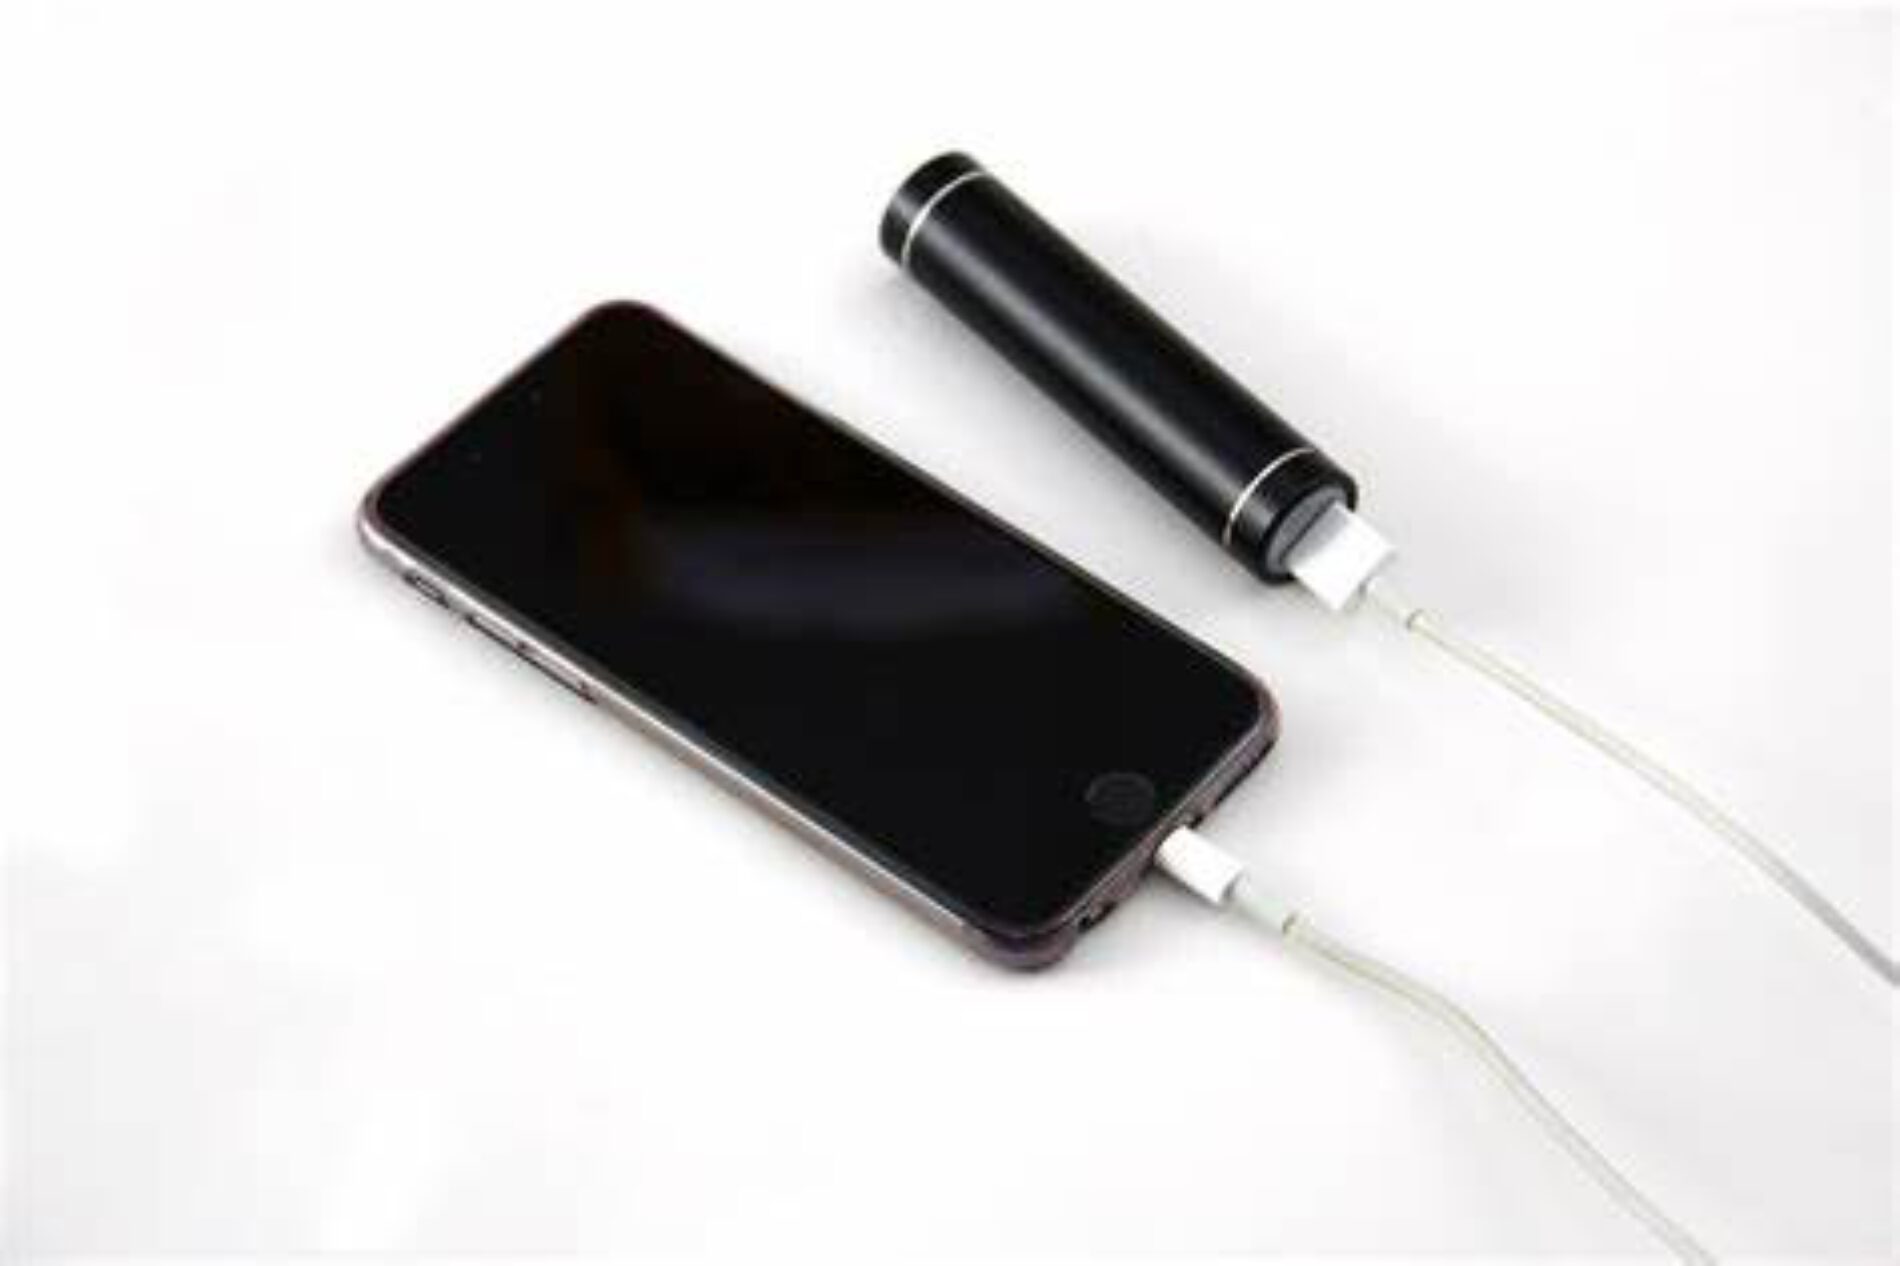 Exprime la batería de tu dispositivo iPhone/iPad.